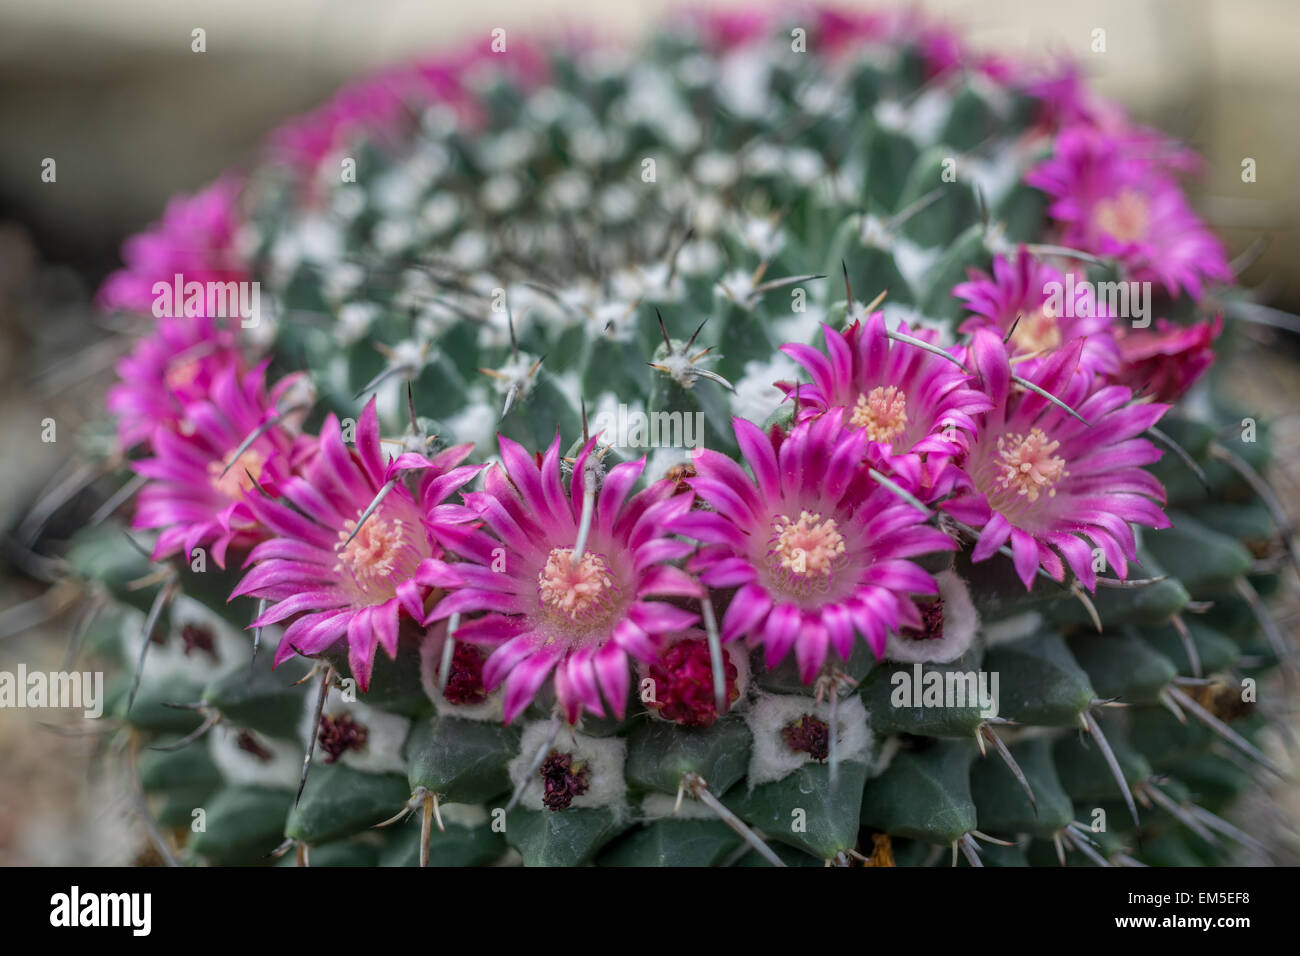 Cactus Mammillaria crebrispina flowering Stock Photo